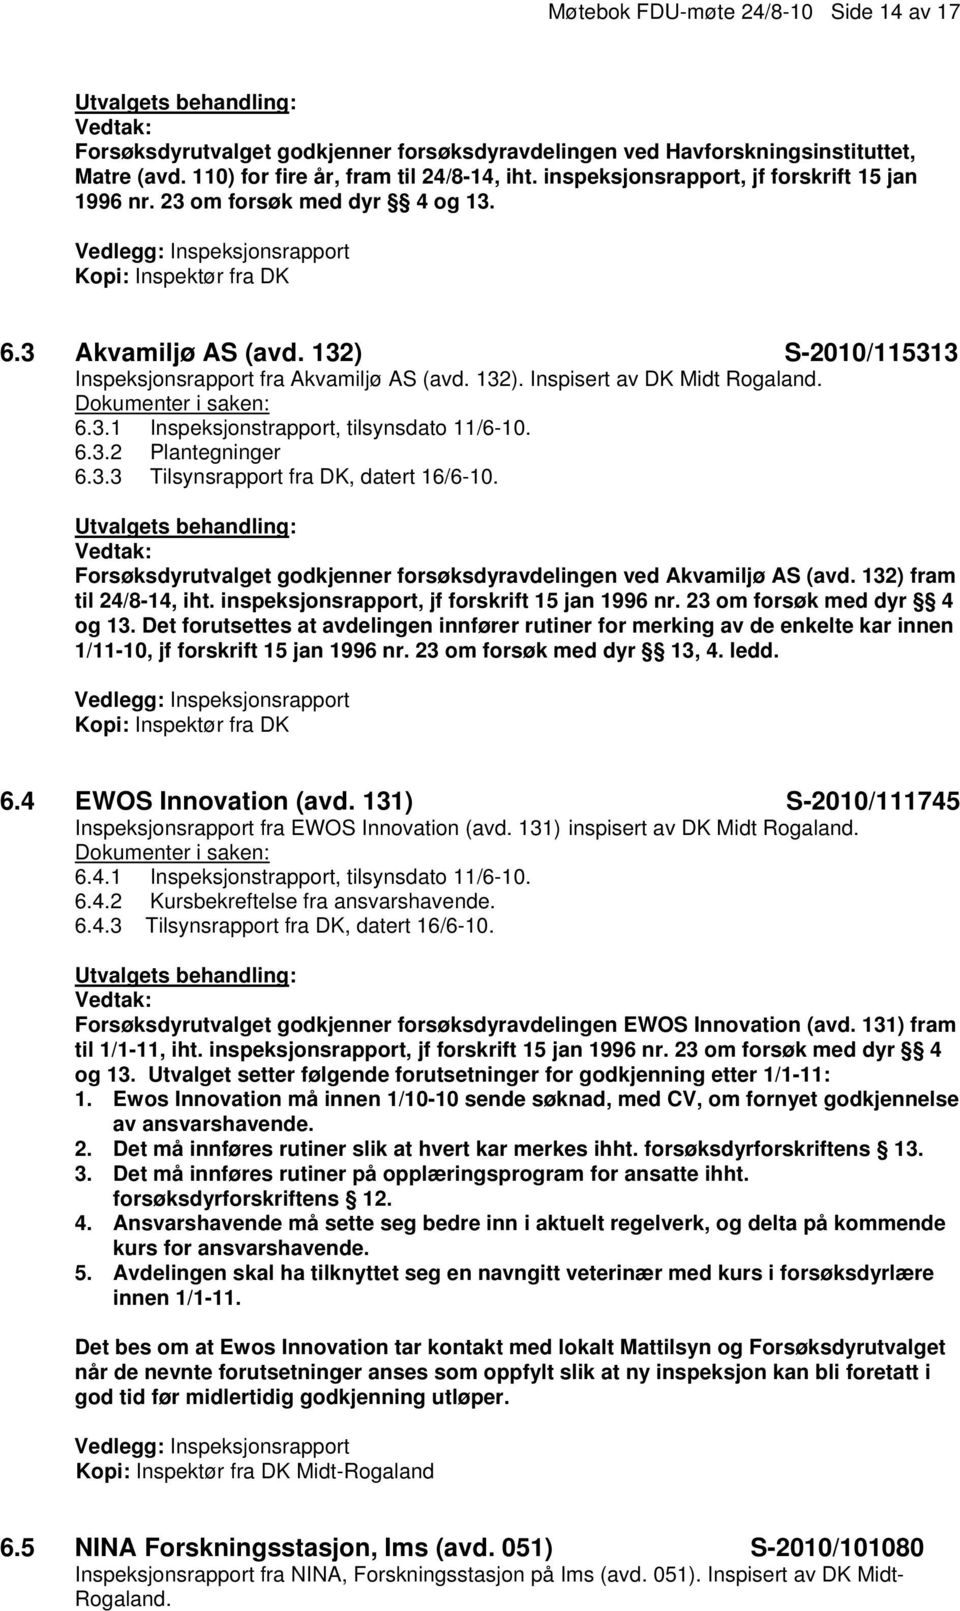 132) S-2010/115313 Inspeksjonsrapport fra Akvamiljø AS (avd. 132). Inspisert av DK Midt Rogaland. 6.3.1 Inspeksjonstrapport, tilsynsdato 11/6-10. 6.3.2 Plantegninger 6.3.3 Tilsynsrapport fra DK, datert 16/6-10.